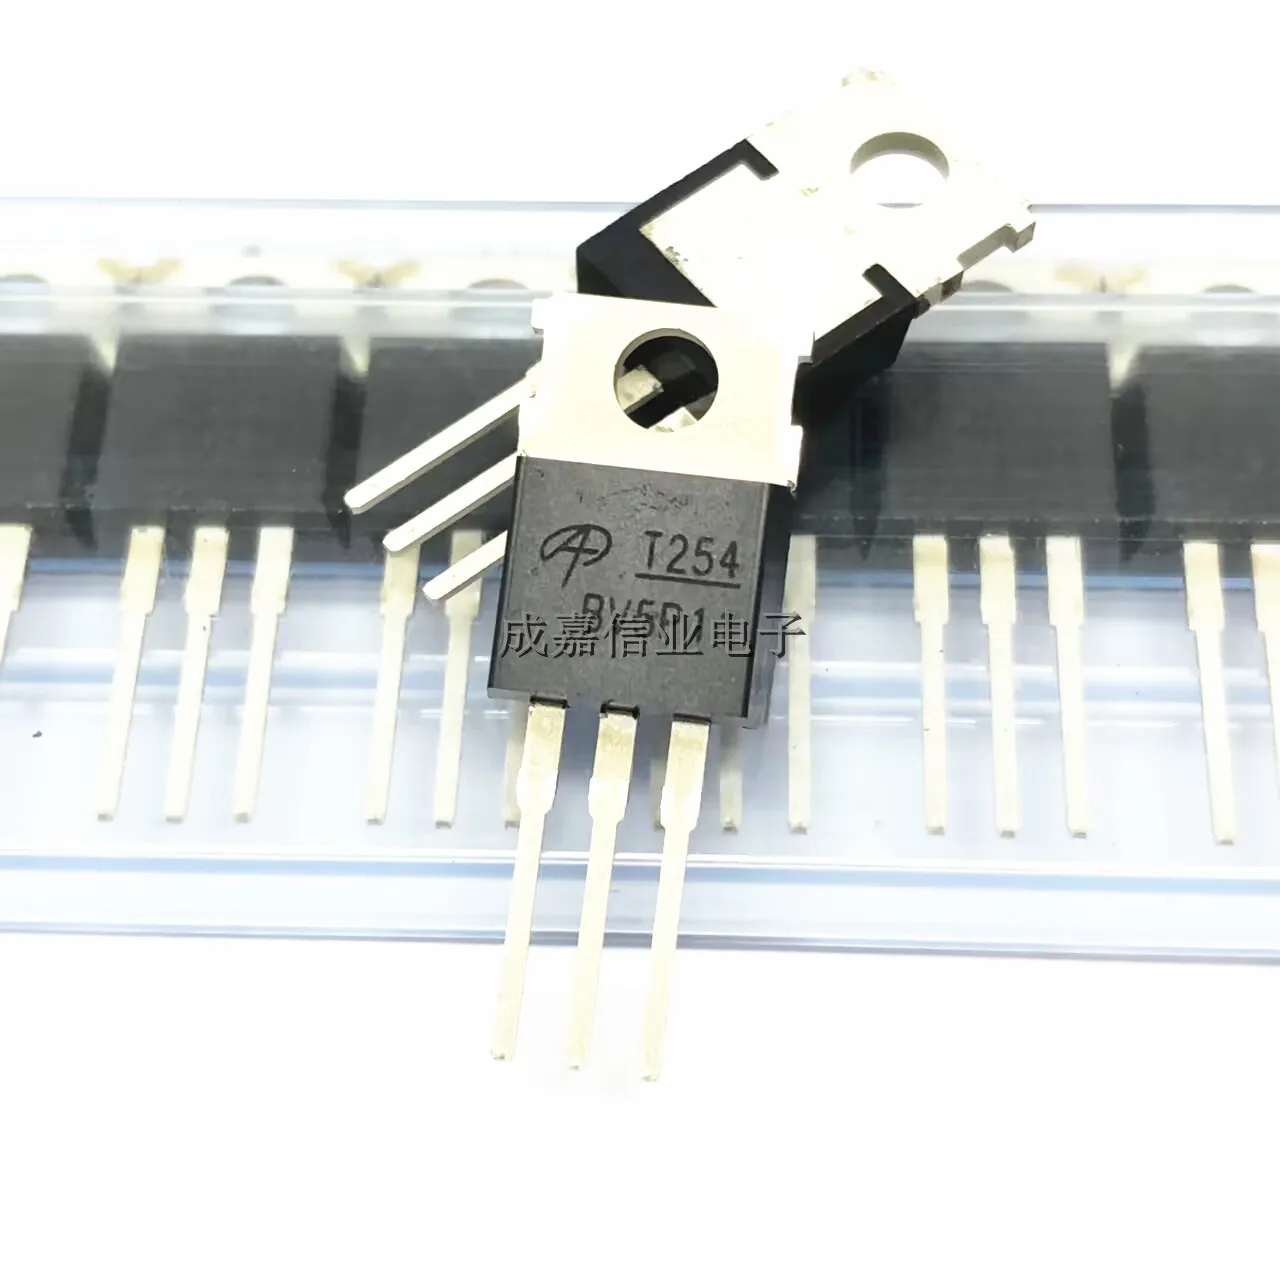 10 шт./лот транзистор полевого эффекта AOT254L TO-220-3 маркировка; T254 N-канальный транзистор 150 в 175 а рабочая температура; -55 ℃ ~ + ℃ 10 шт лот lr7843 изолированный модуль трубки полевого эффекта моп транзистора 30 в 161a fz3522